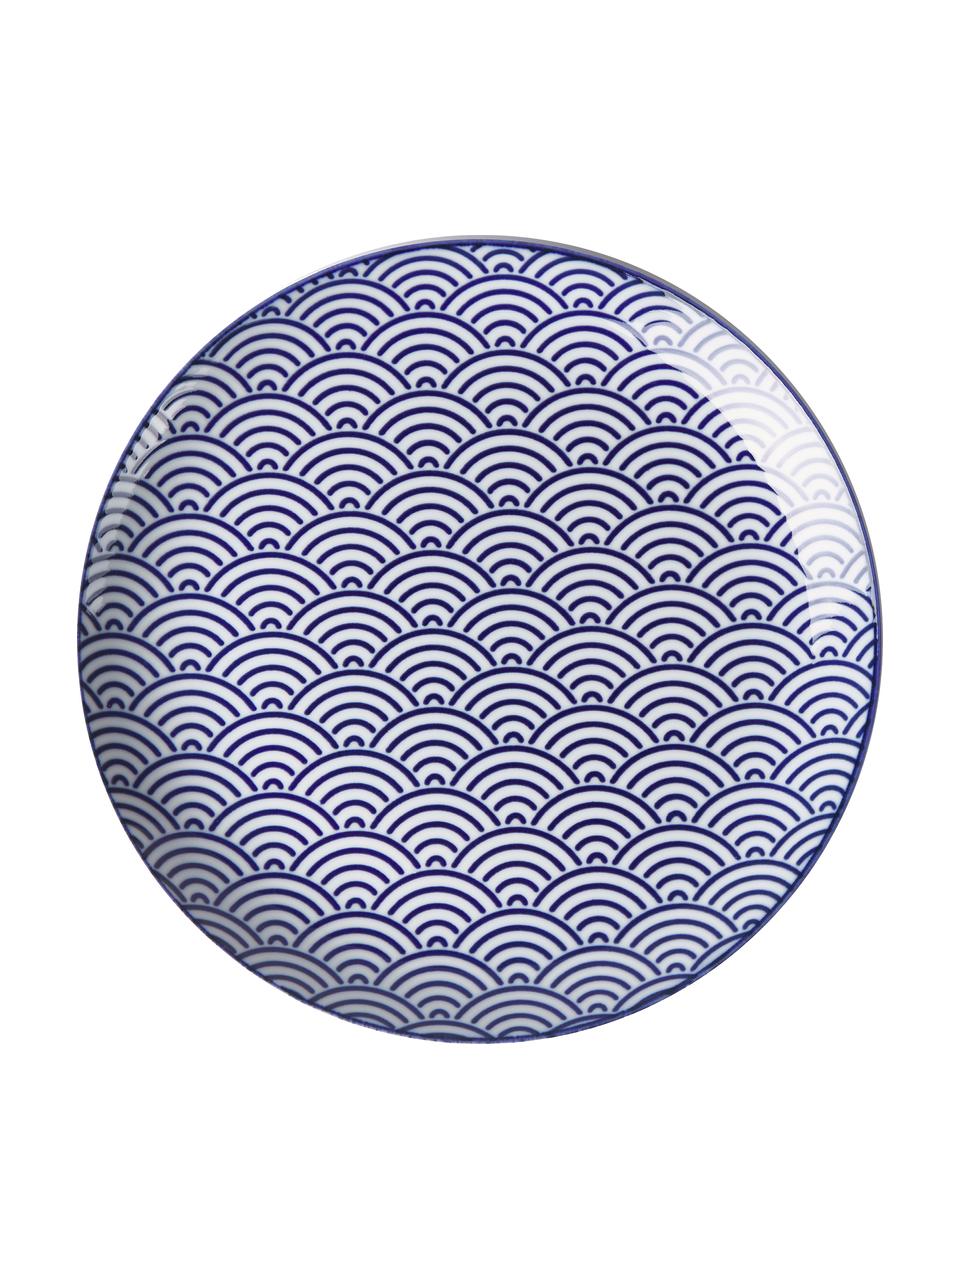 Handgemaakte porseleinen dinerbord Nippon in blauw/wit, set van 4, Porselein, Blauw, wit, Ø 26 cm